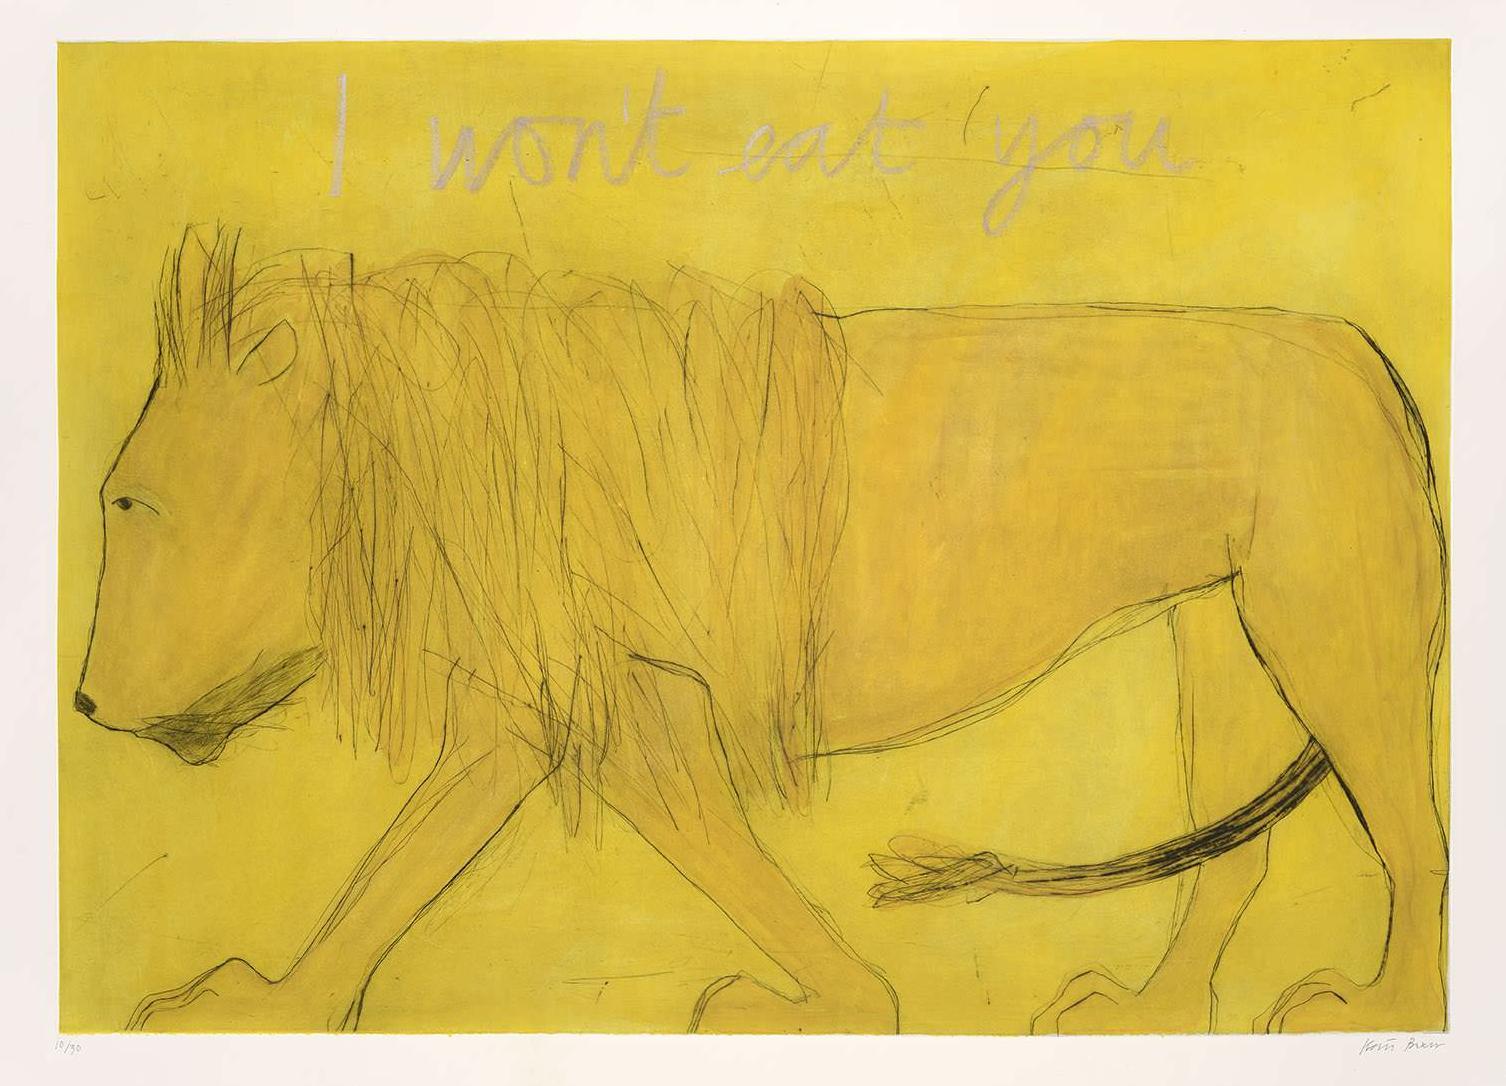 Landscape Print Kate Boxer  - I Won't Eat You, édition limitée, imprimé animal, lion, jaune, illustration